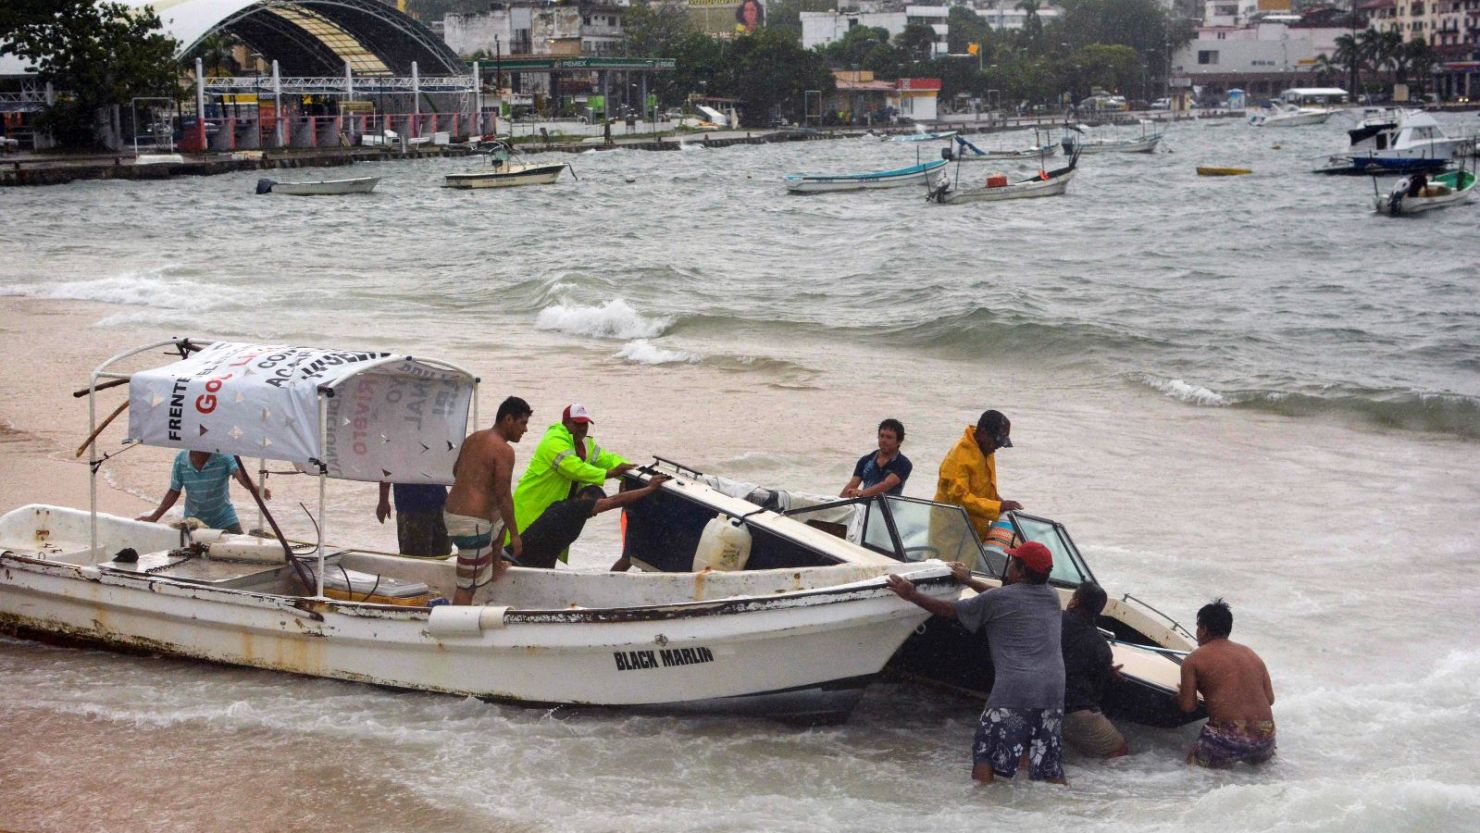 Los pescadores sacan sus botes del mar en anticipación de la llegada de la tormenta tropical Max a Puerto Márquez, estado de Guerrero, México.